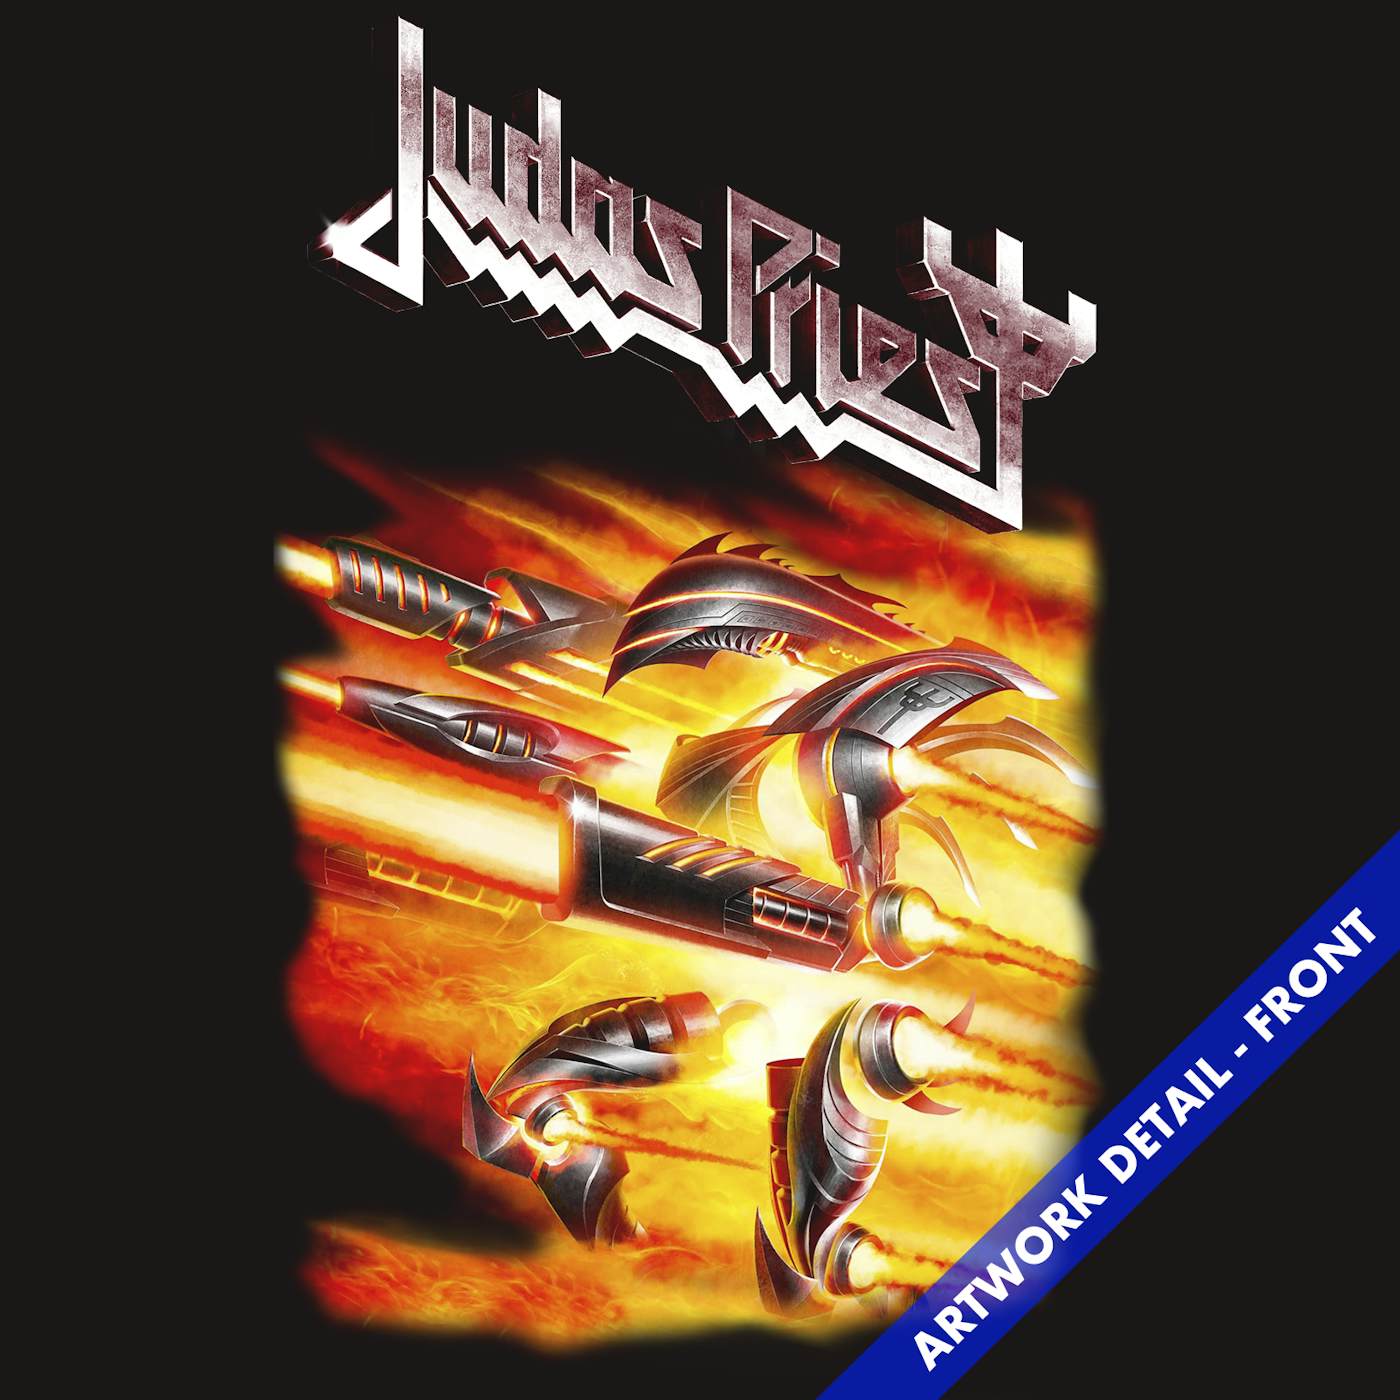 Judas Priest - Judas Rising Lyrics